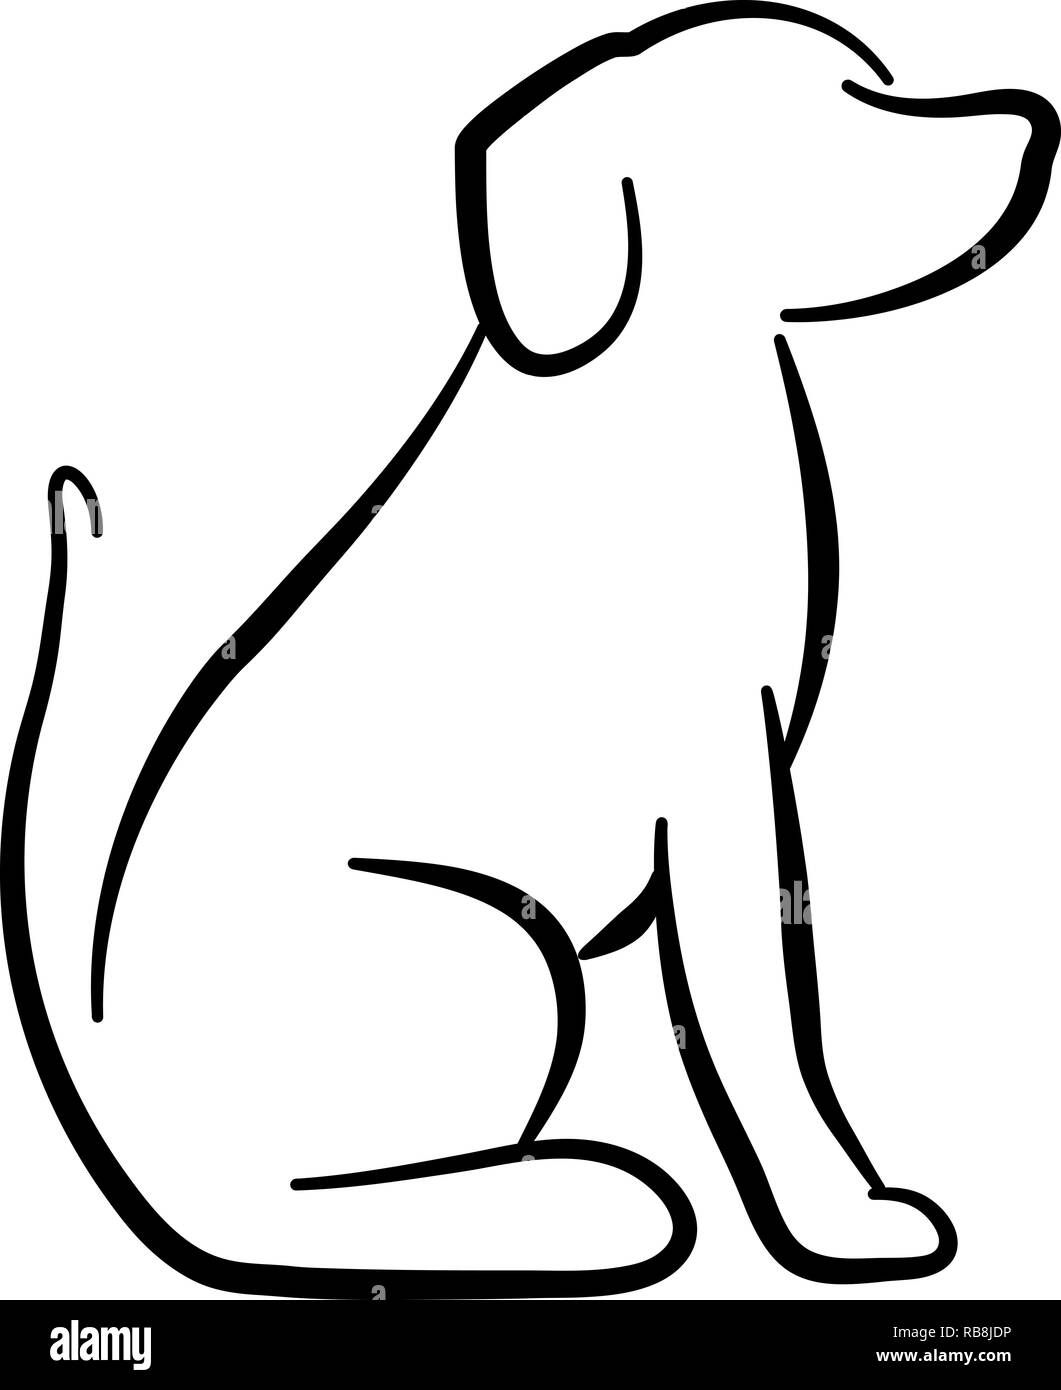 Perro sentado silueta Imágenes de stock en blanco y negro - Alamy